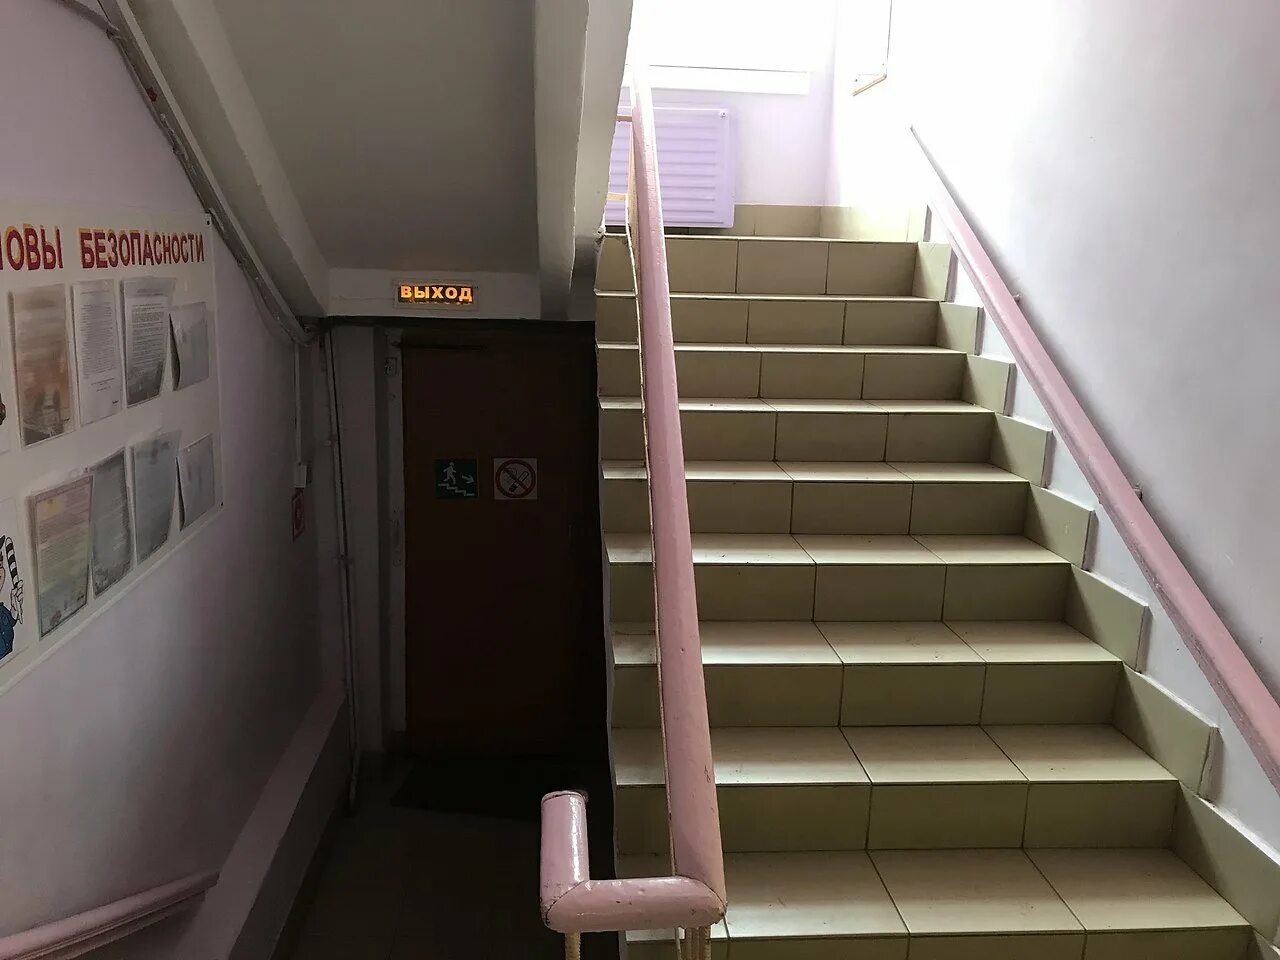 Второй этаж в школе. Лестница в школе. Лестница в больнице. Лестничный пролет в школе. Лестничный пролет больницы.